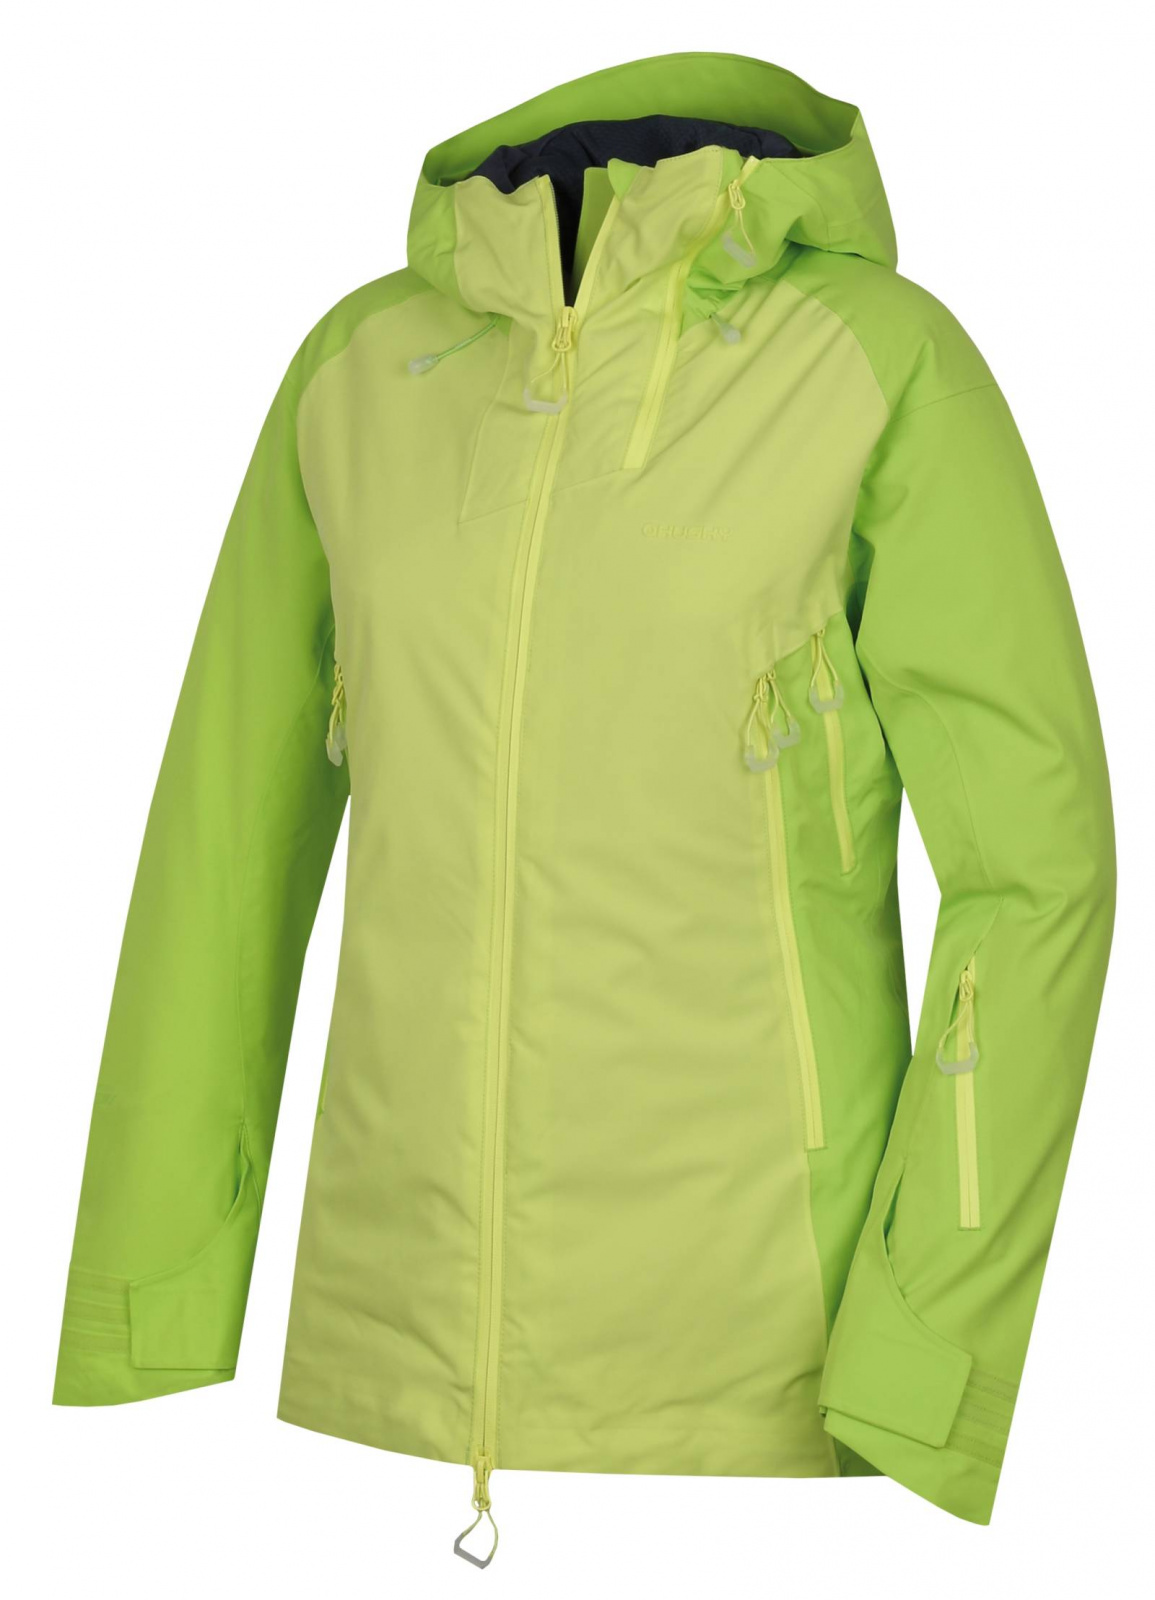 Husky Gambola L L, výrazně zelená / sv. zelená Dámská lyžařská plněná bunda